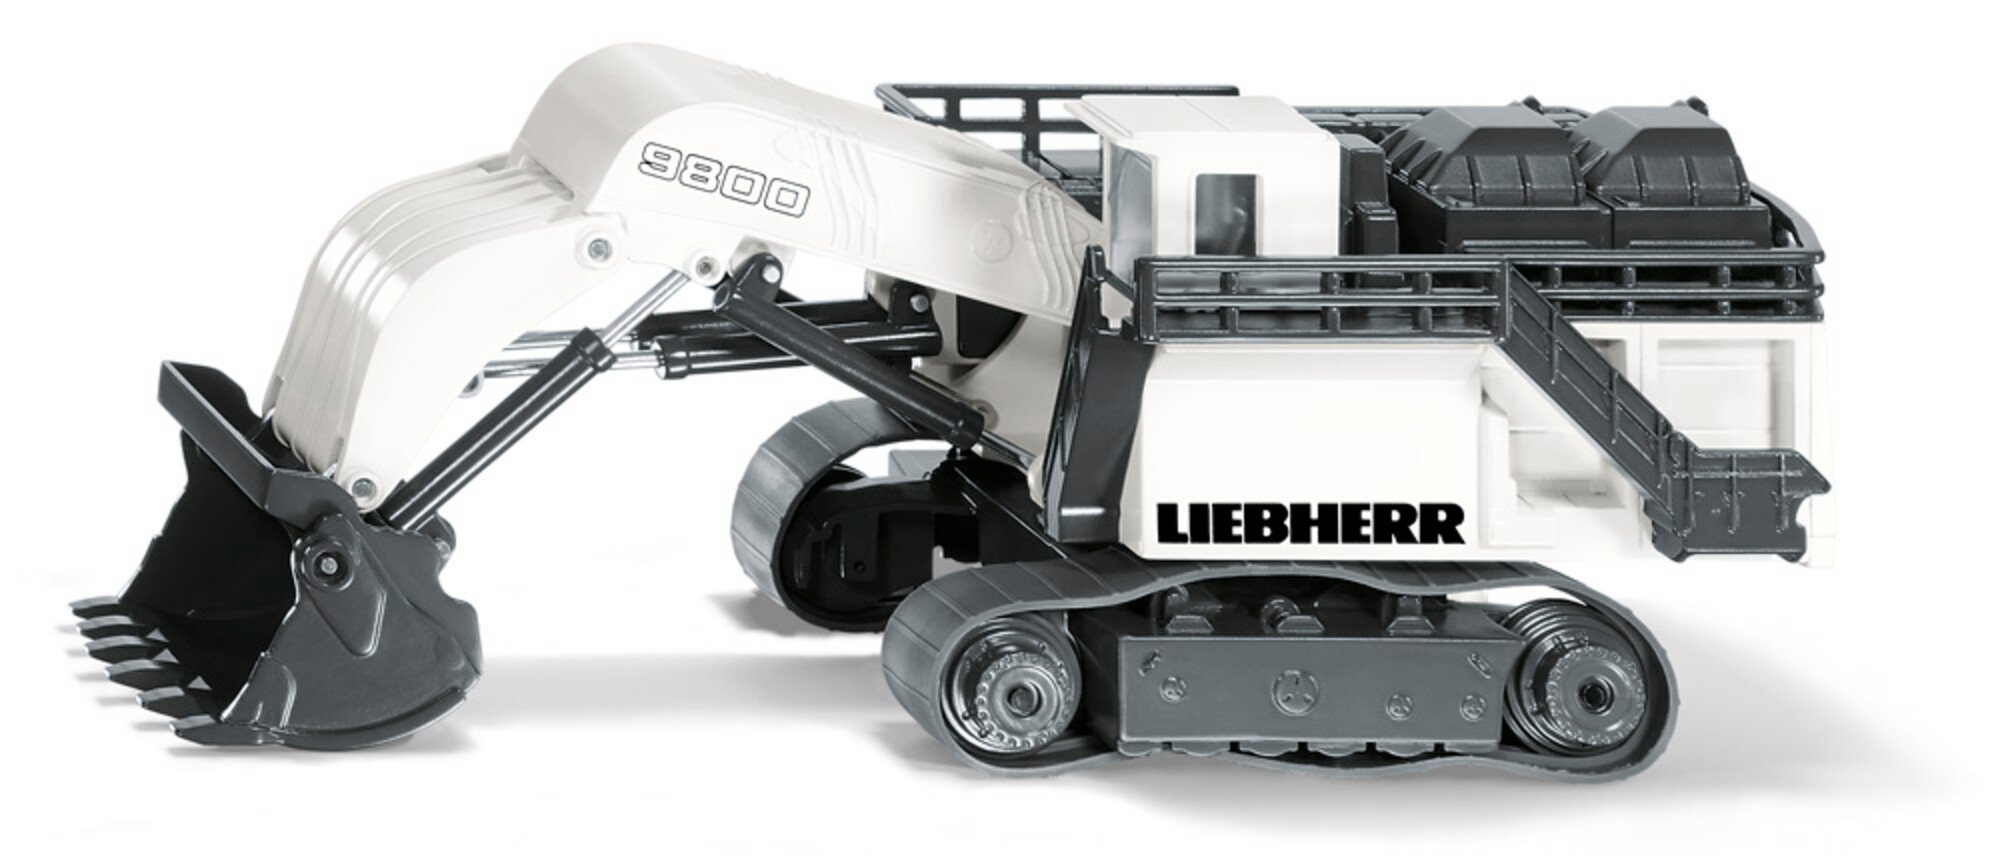 Liebherr R9800 Mining-Bagger